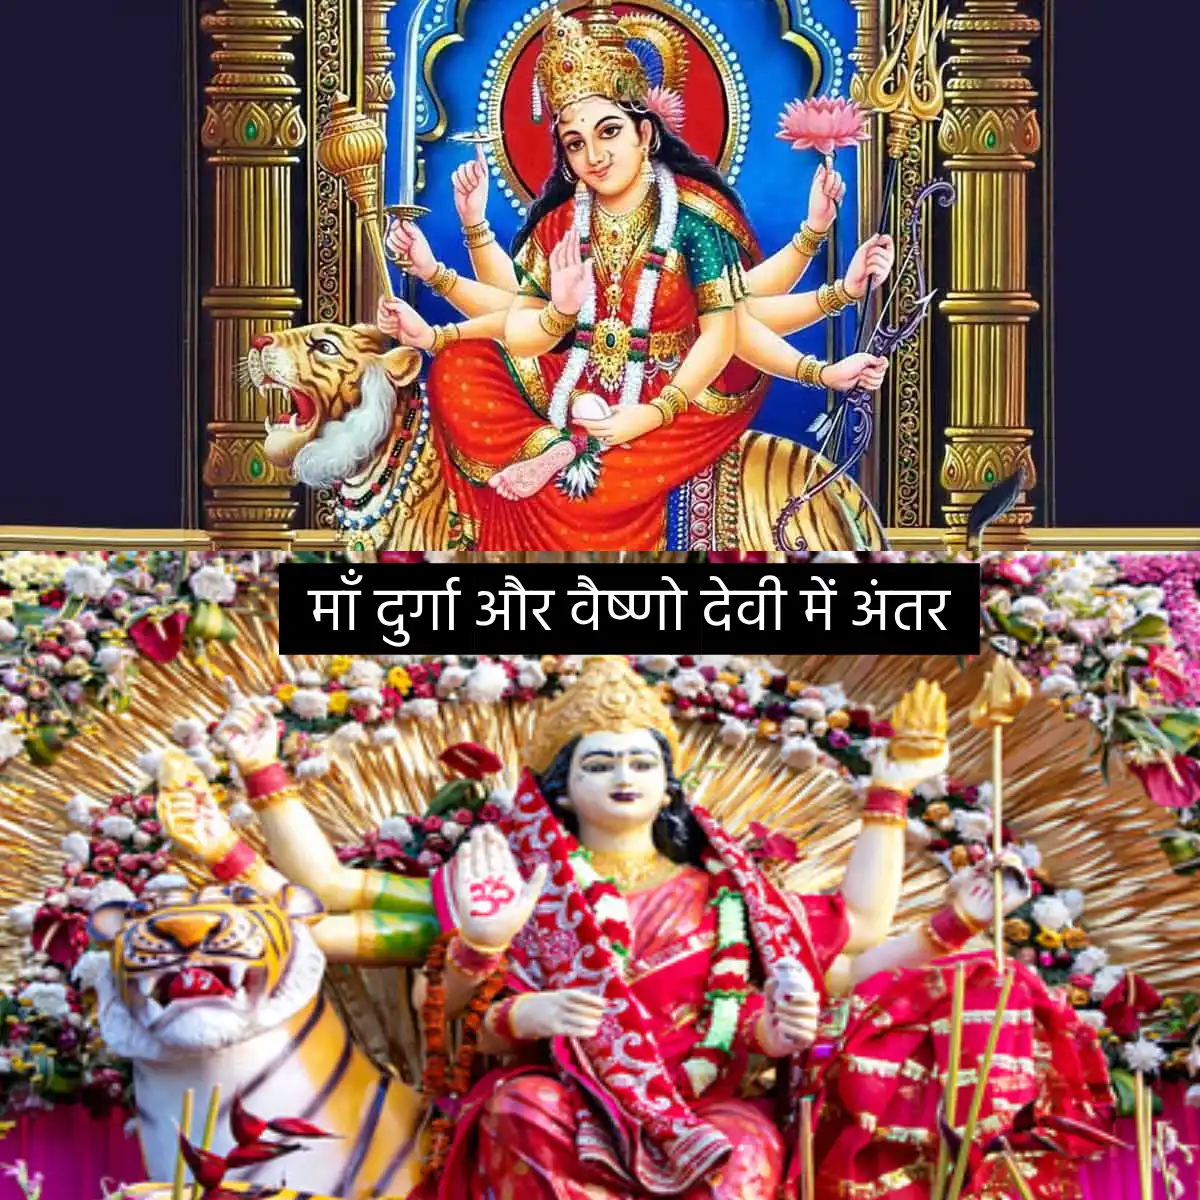 माँ दुर्गा और वैष्णो देवी में क्या अंतर हैं? | differences between Maa Durga and Vaishno Devi